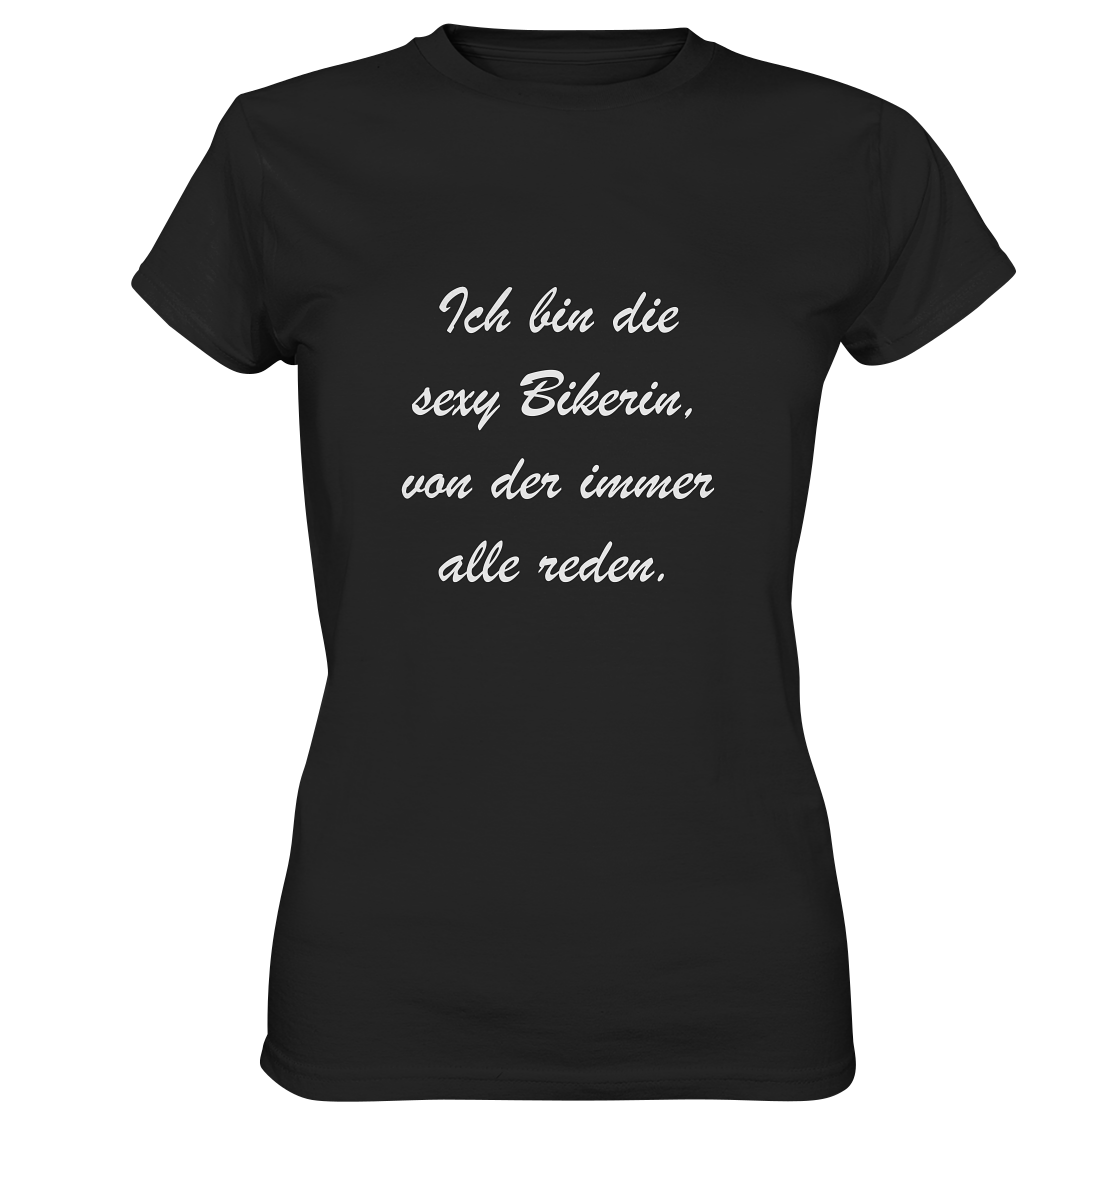 Damen-T-Shirt, Rundhals, mit weißem Spruch "Ich bin die sexy Bikerin, von der immer alle reden."  schwarz